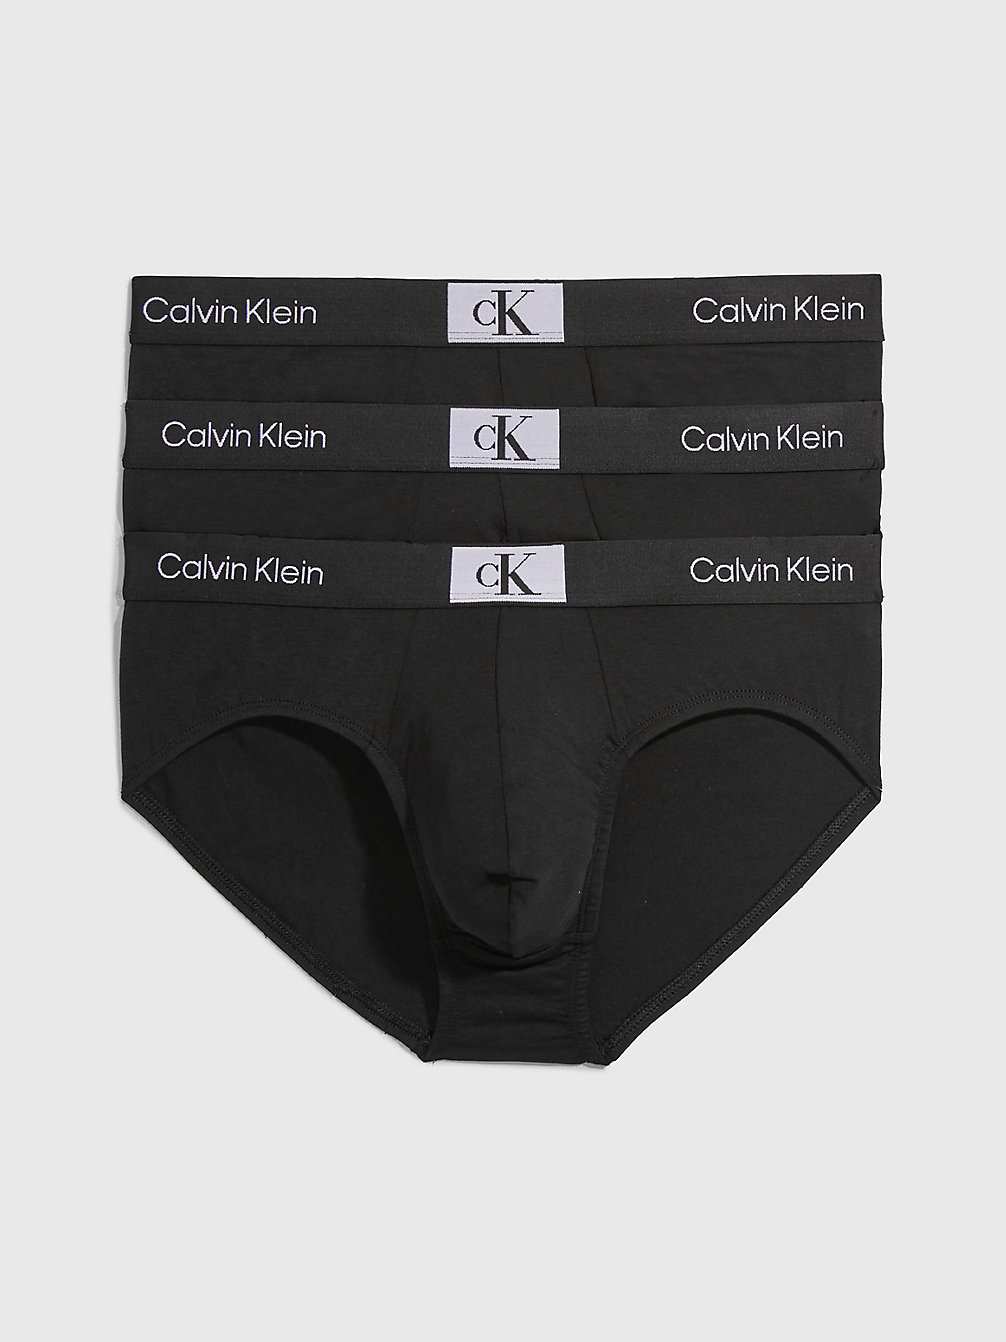 BLACK/ BLACK/ BLACK Lot De 3 Boxers Longs - Ck96 undefined hommes Calvin Klein